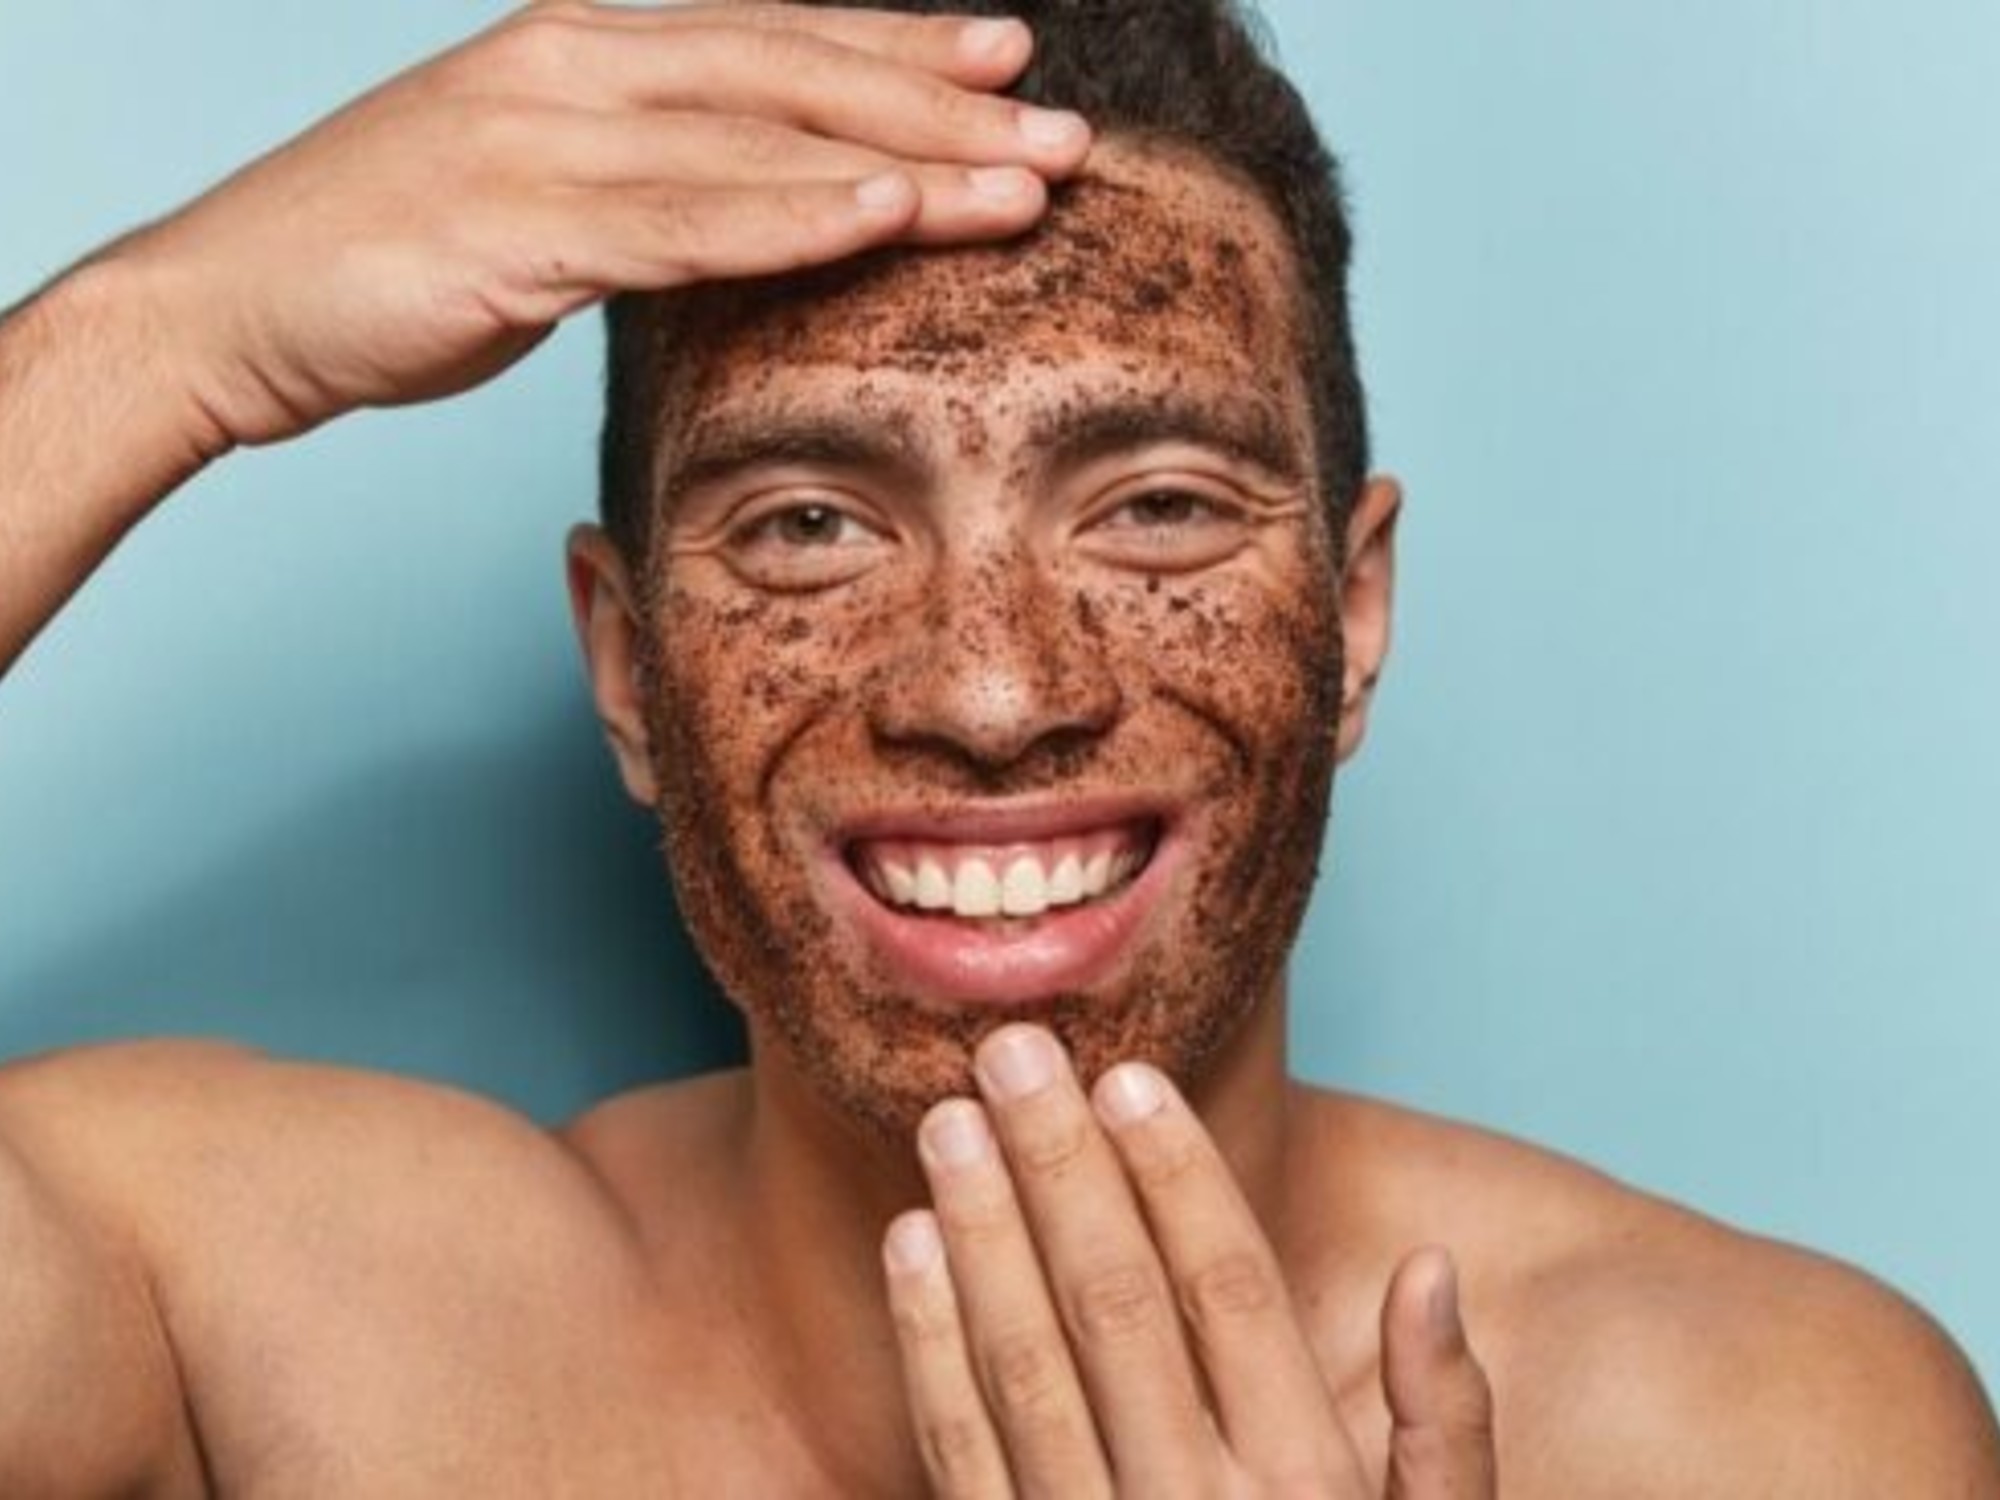 Werkt een gezichtsscrub ook voor mannen? | Pomade-Online.nl -  Pomade-online.nl